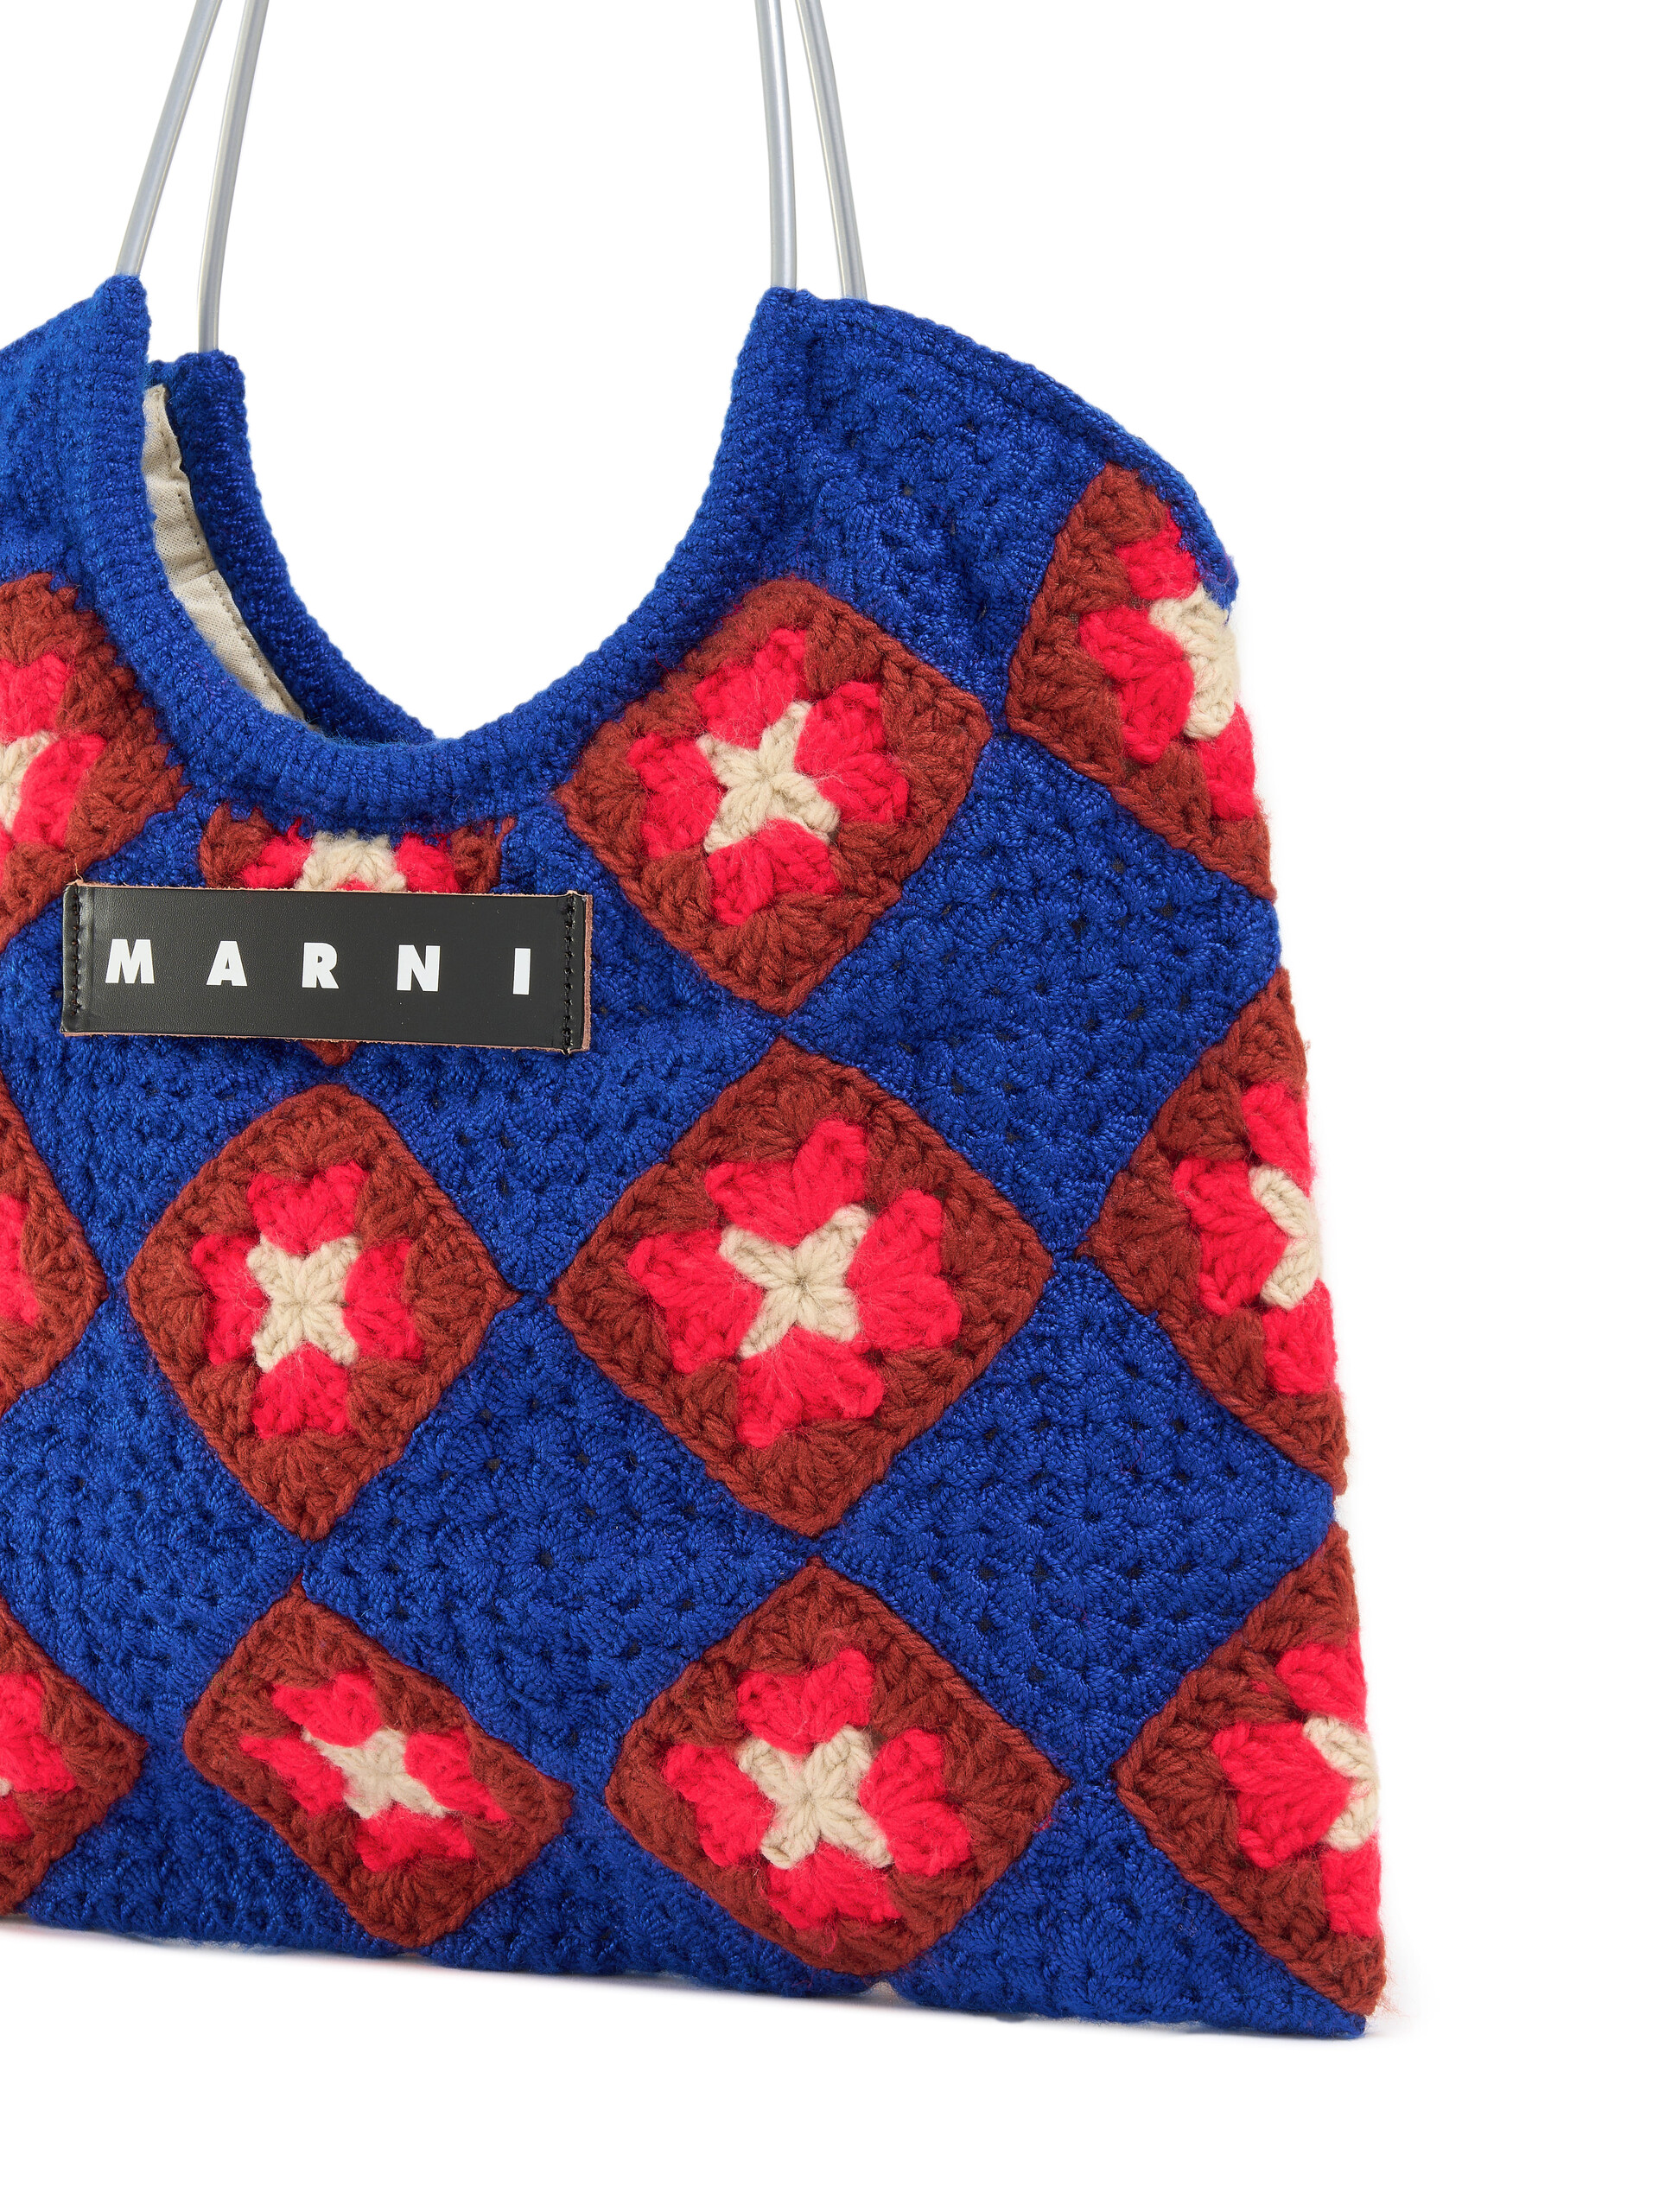 Blue Crochet Marni Market Hedge Bag - Shopping Bags - Image 4